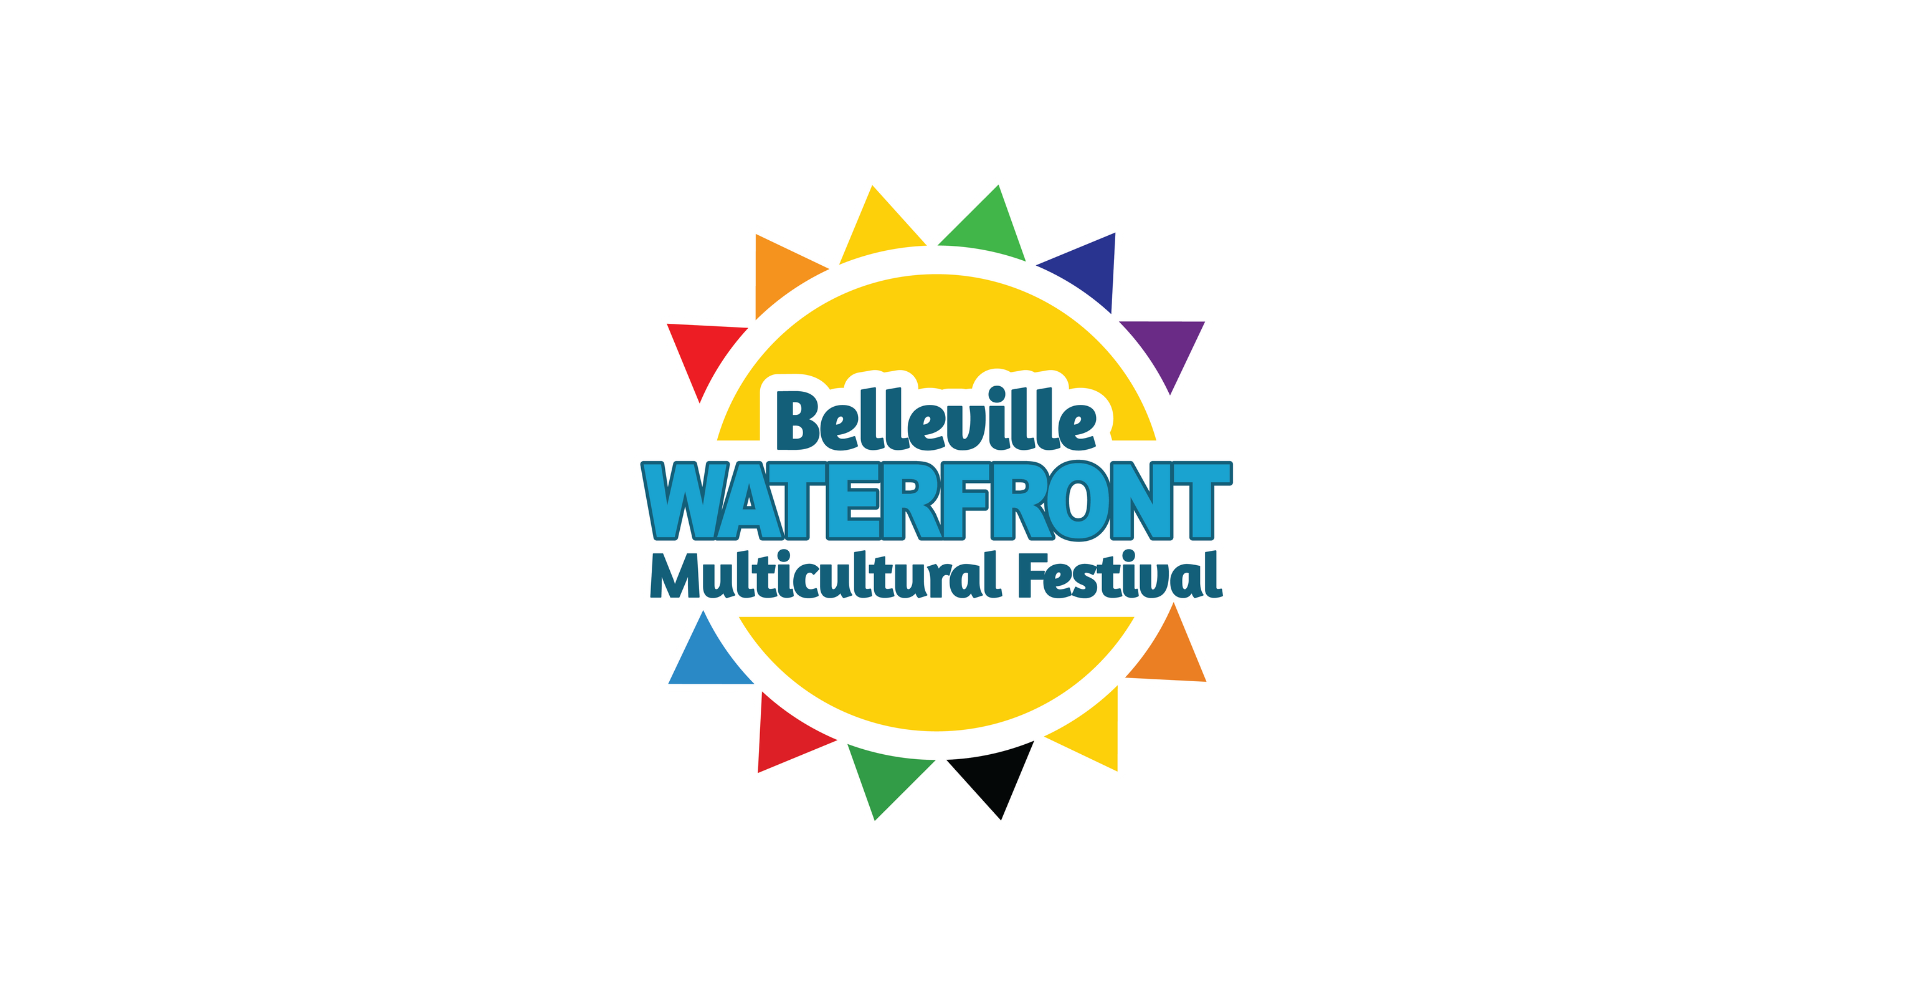 poster titled belleville waterfront festival